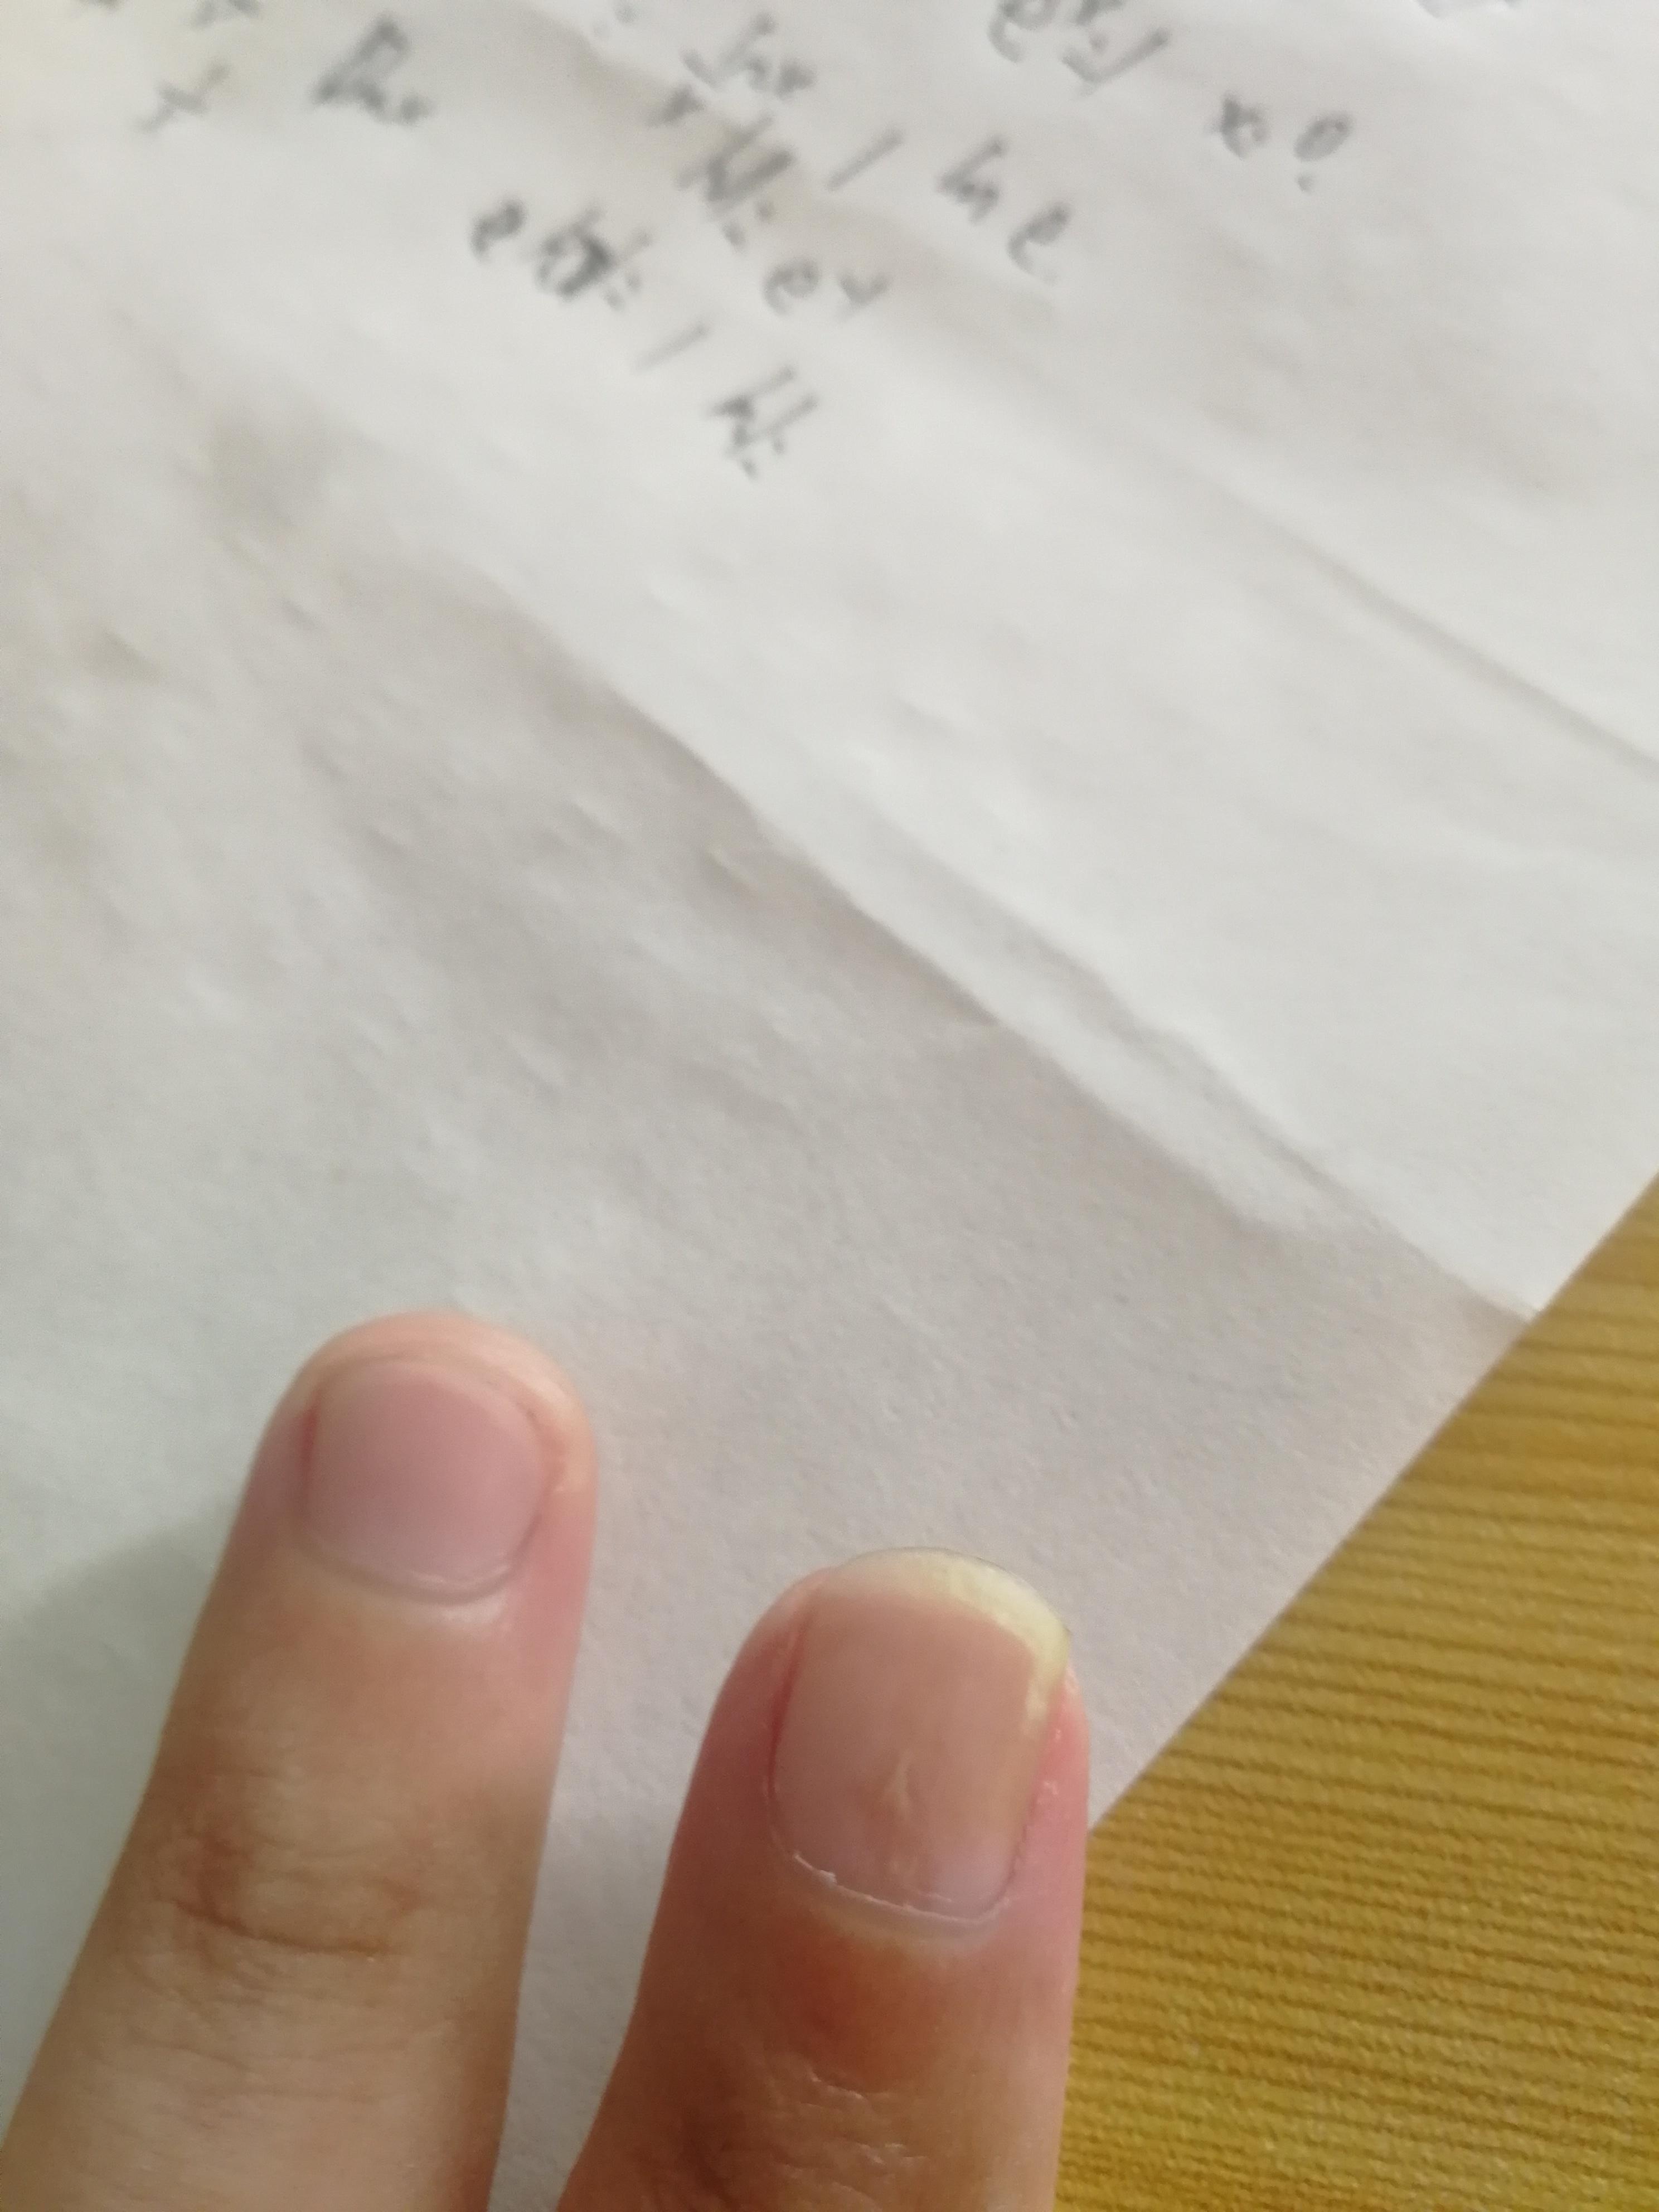 黃景昱醫師的皮膚小學堂: 我的指甲怎麼裂成兩半了? 認識腸病毒感染引起的脫甲症（Onychomadesis）